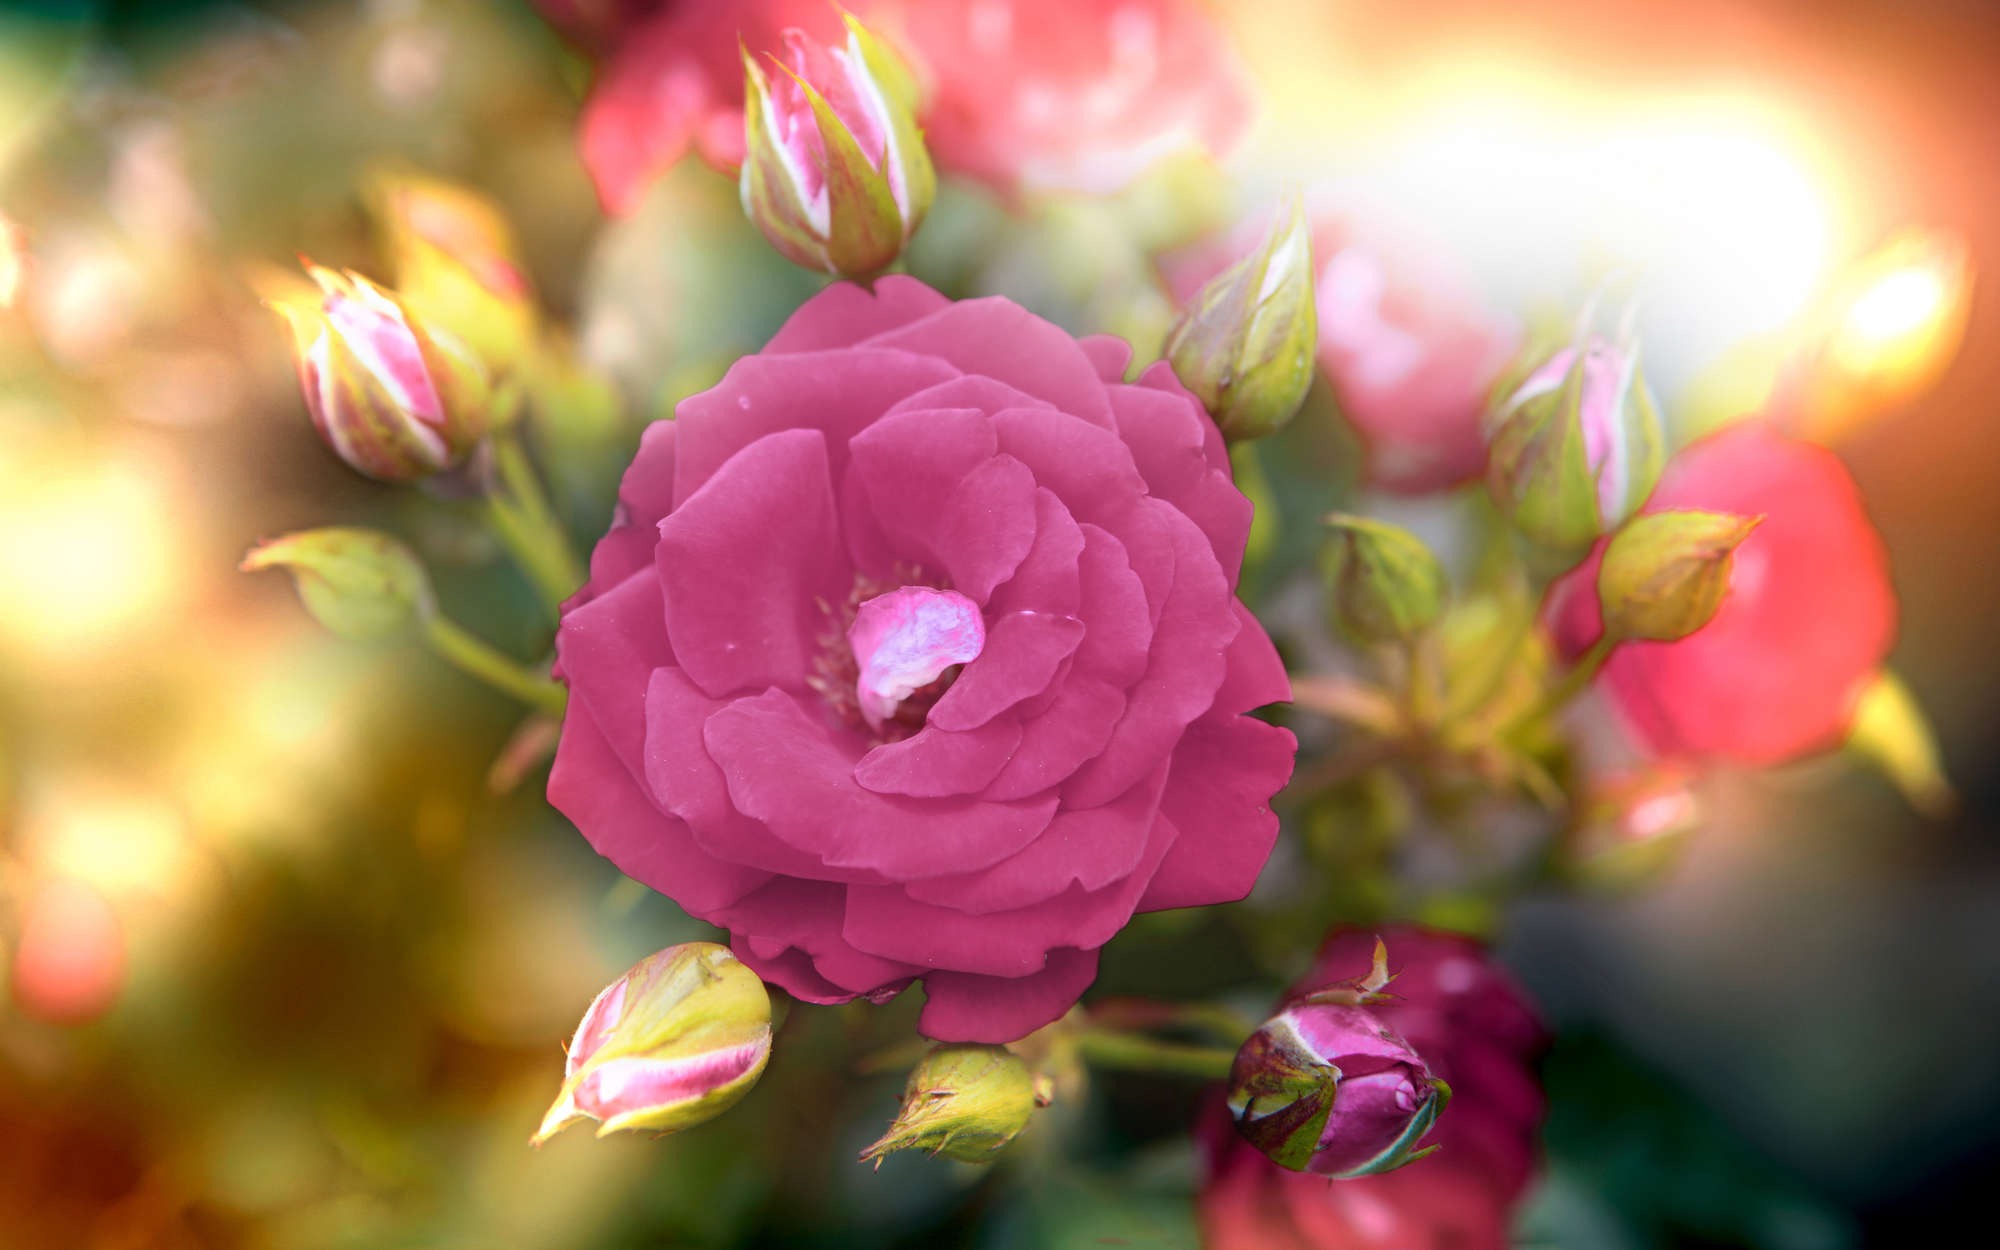             Fotomural Flor con flor en rosa - tejido no tejido liso de alta calidad
        